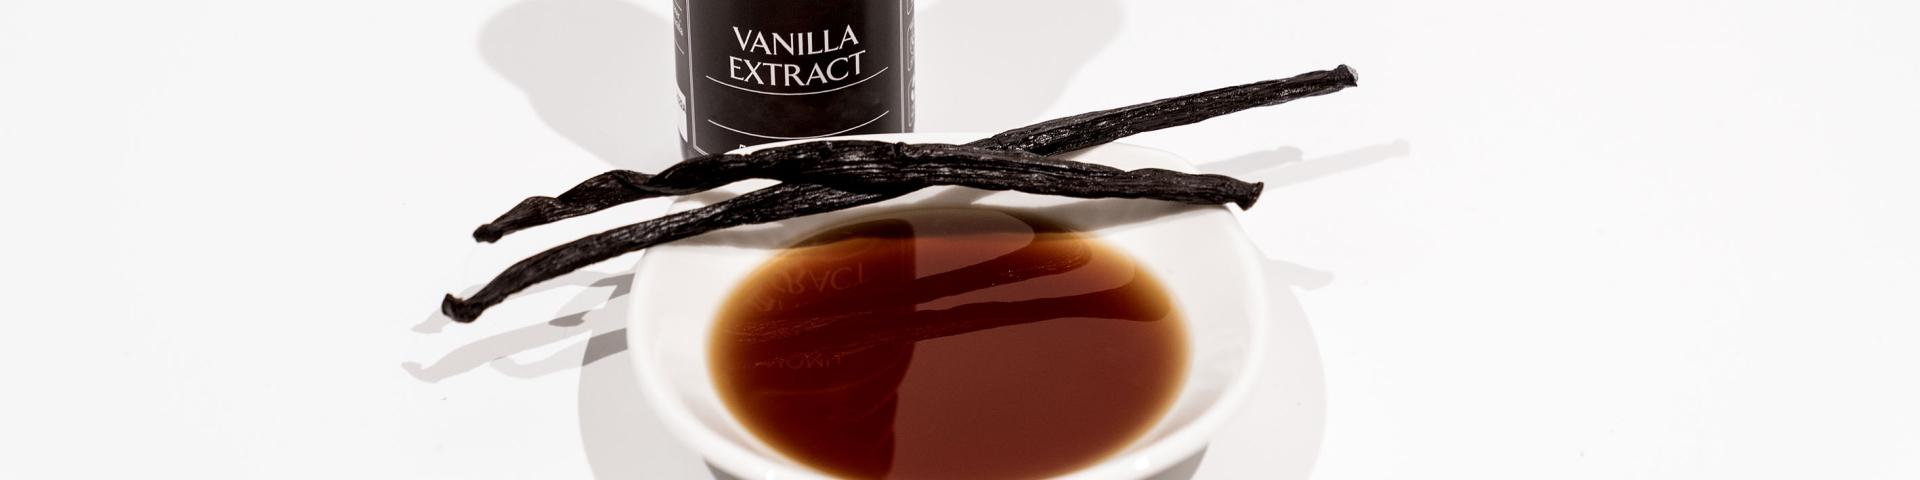 Vanille extract2